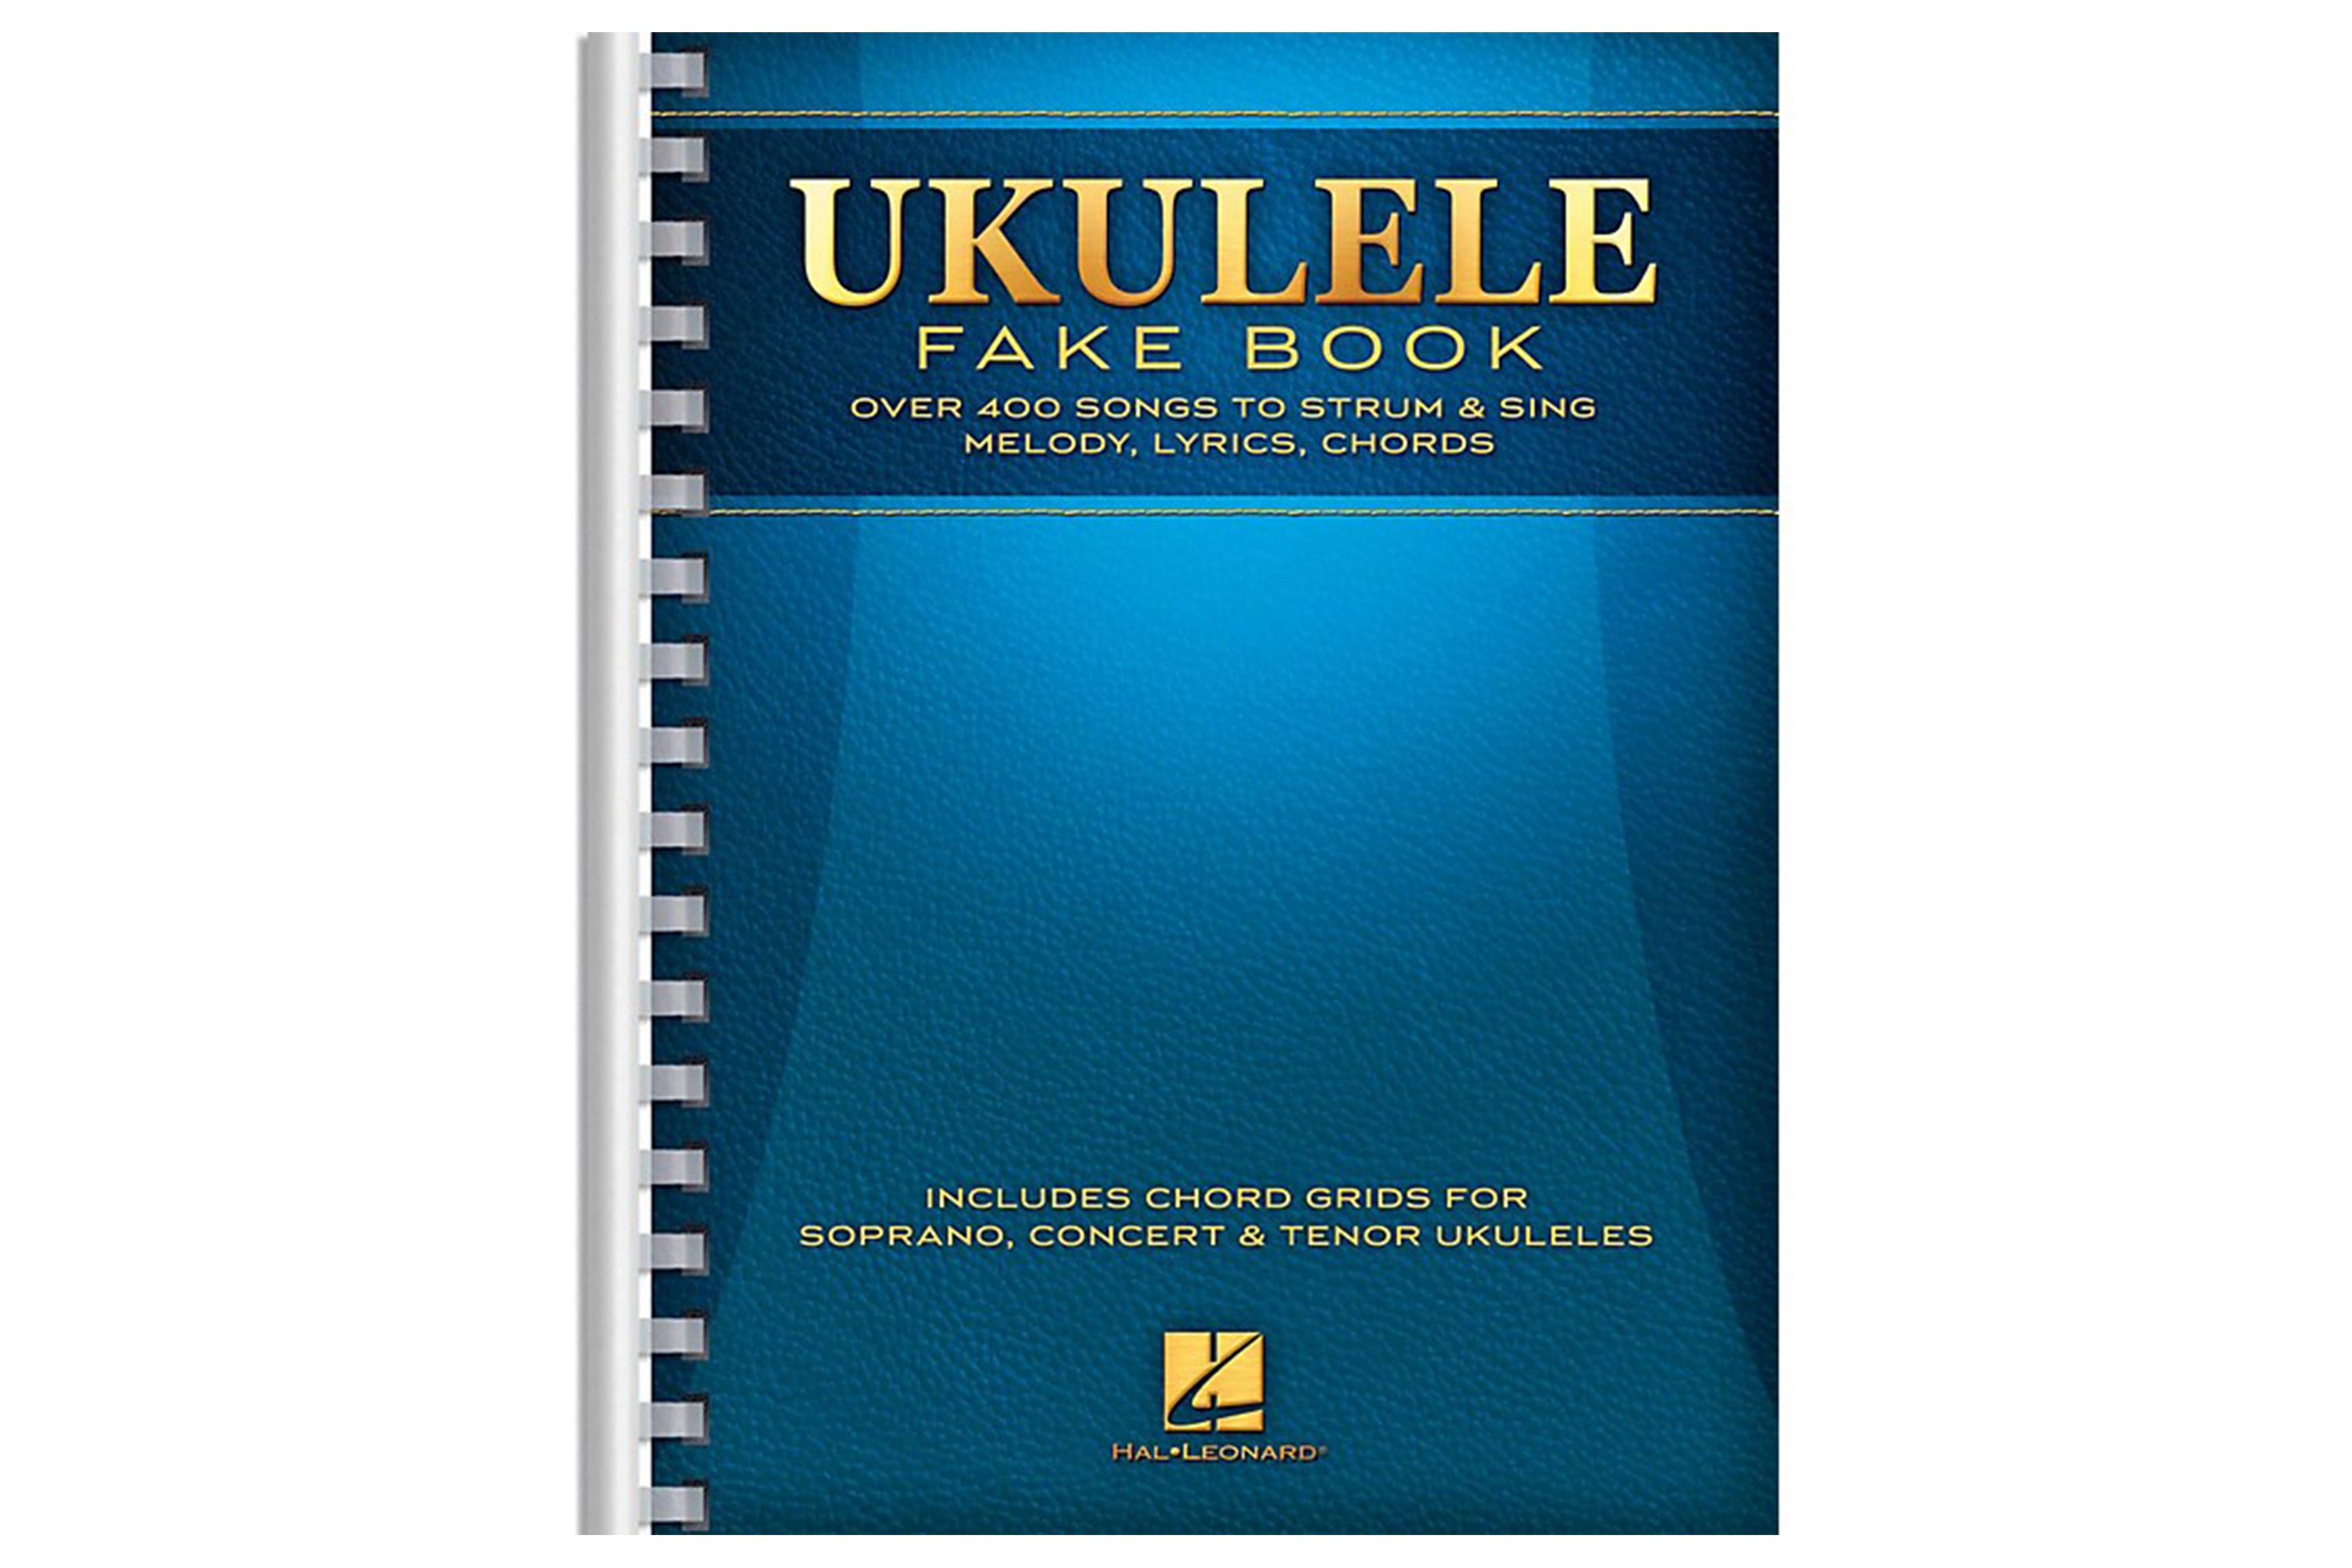 Ukulele Fake Book Full Size